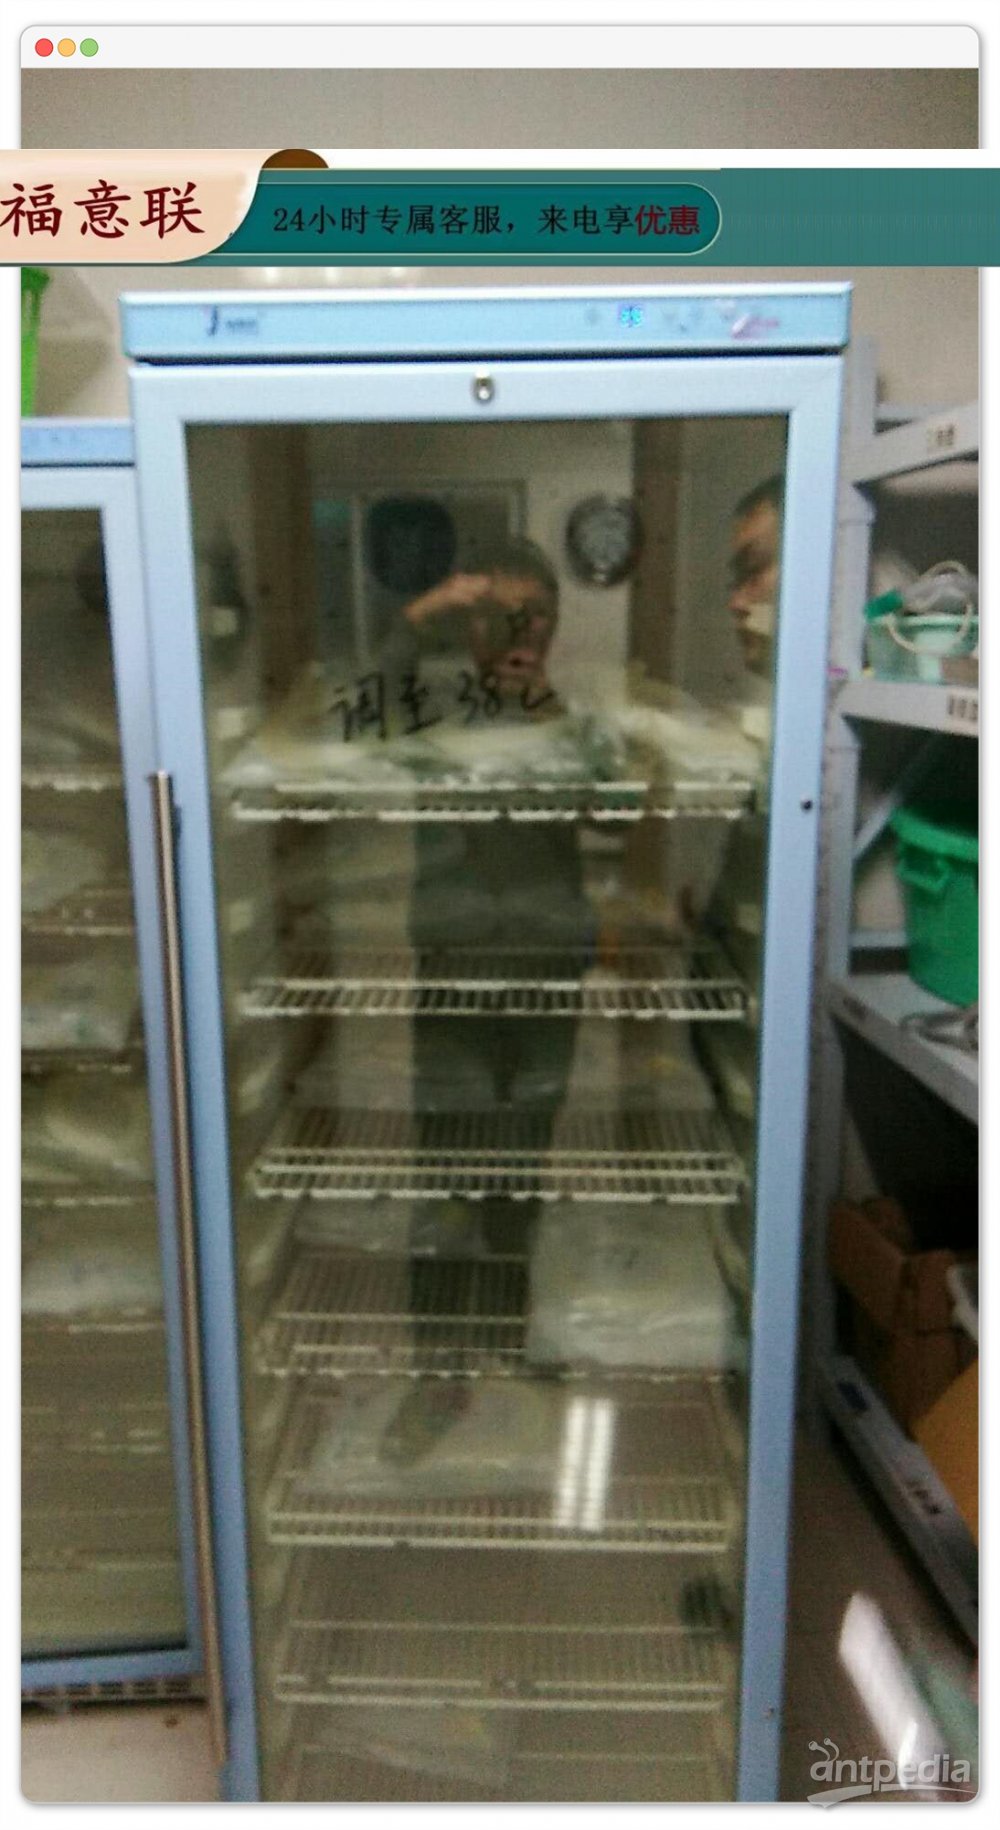 <em>欣</em>母沛贮藏2℃-8℃冰箱